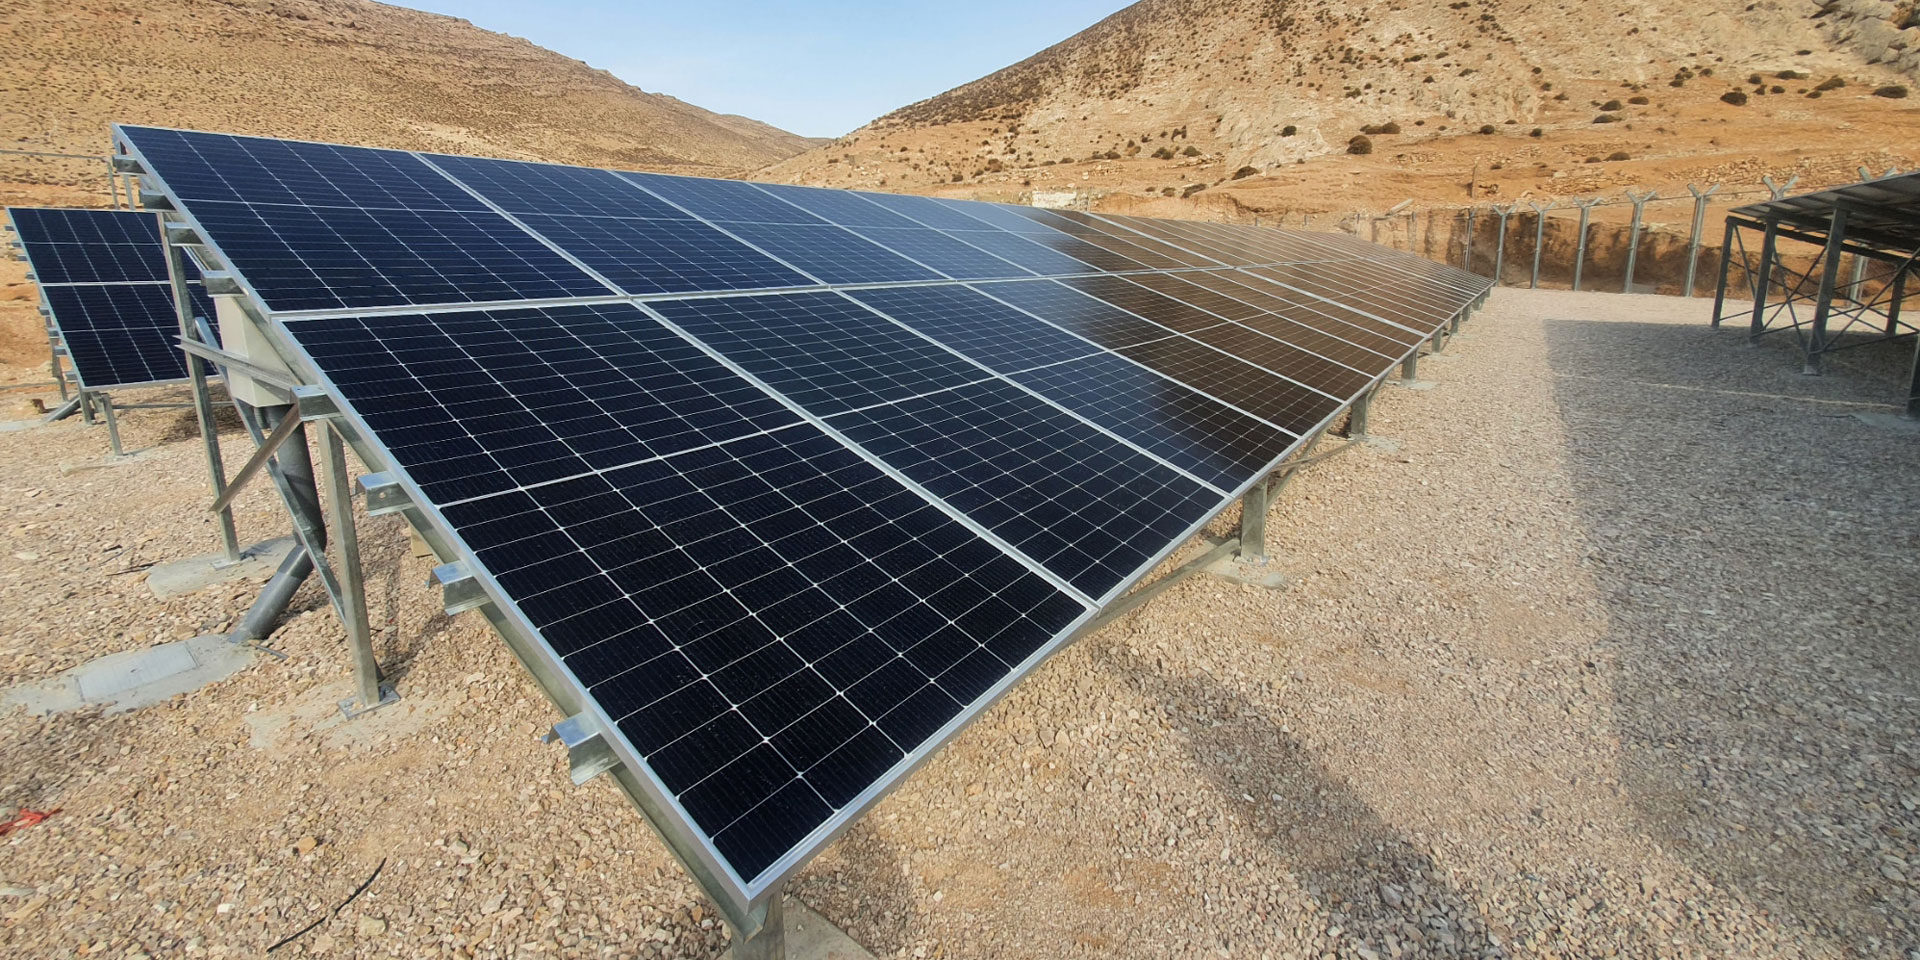  Paneles solares que alimentan la estación de bombeo de agua de Fekha, rehabilitada por la COSUDE.